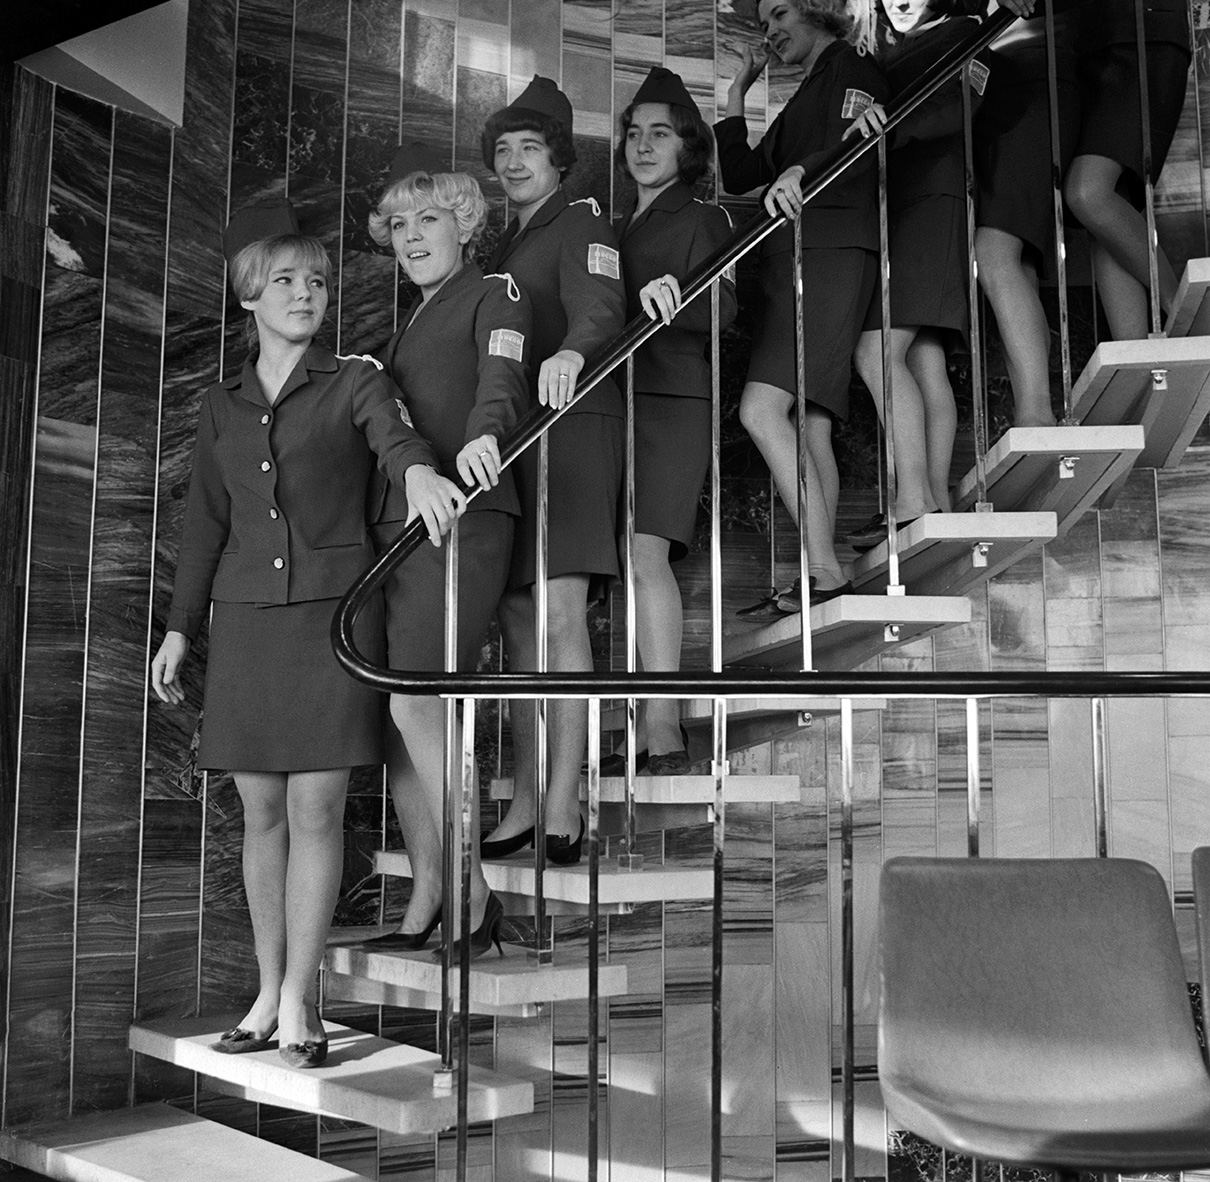 Строительные работы на башне продолжались до 26 декабря 1968 года, когда была закончена отделка на трех уровнях ресторана &laquo;Седьмое небо&raquo;. Тогда на башню поднялись первые посетители. Итоговая высота башни составила 540&nbsp;м вместе с флагштоком
